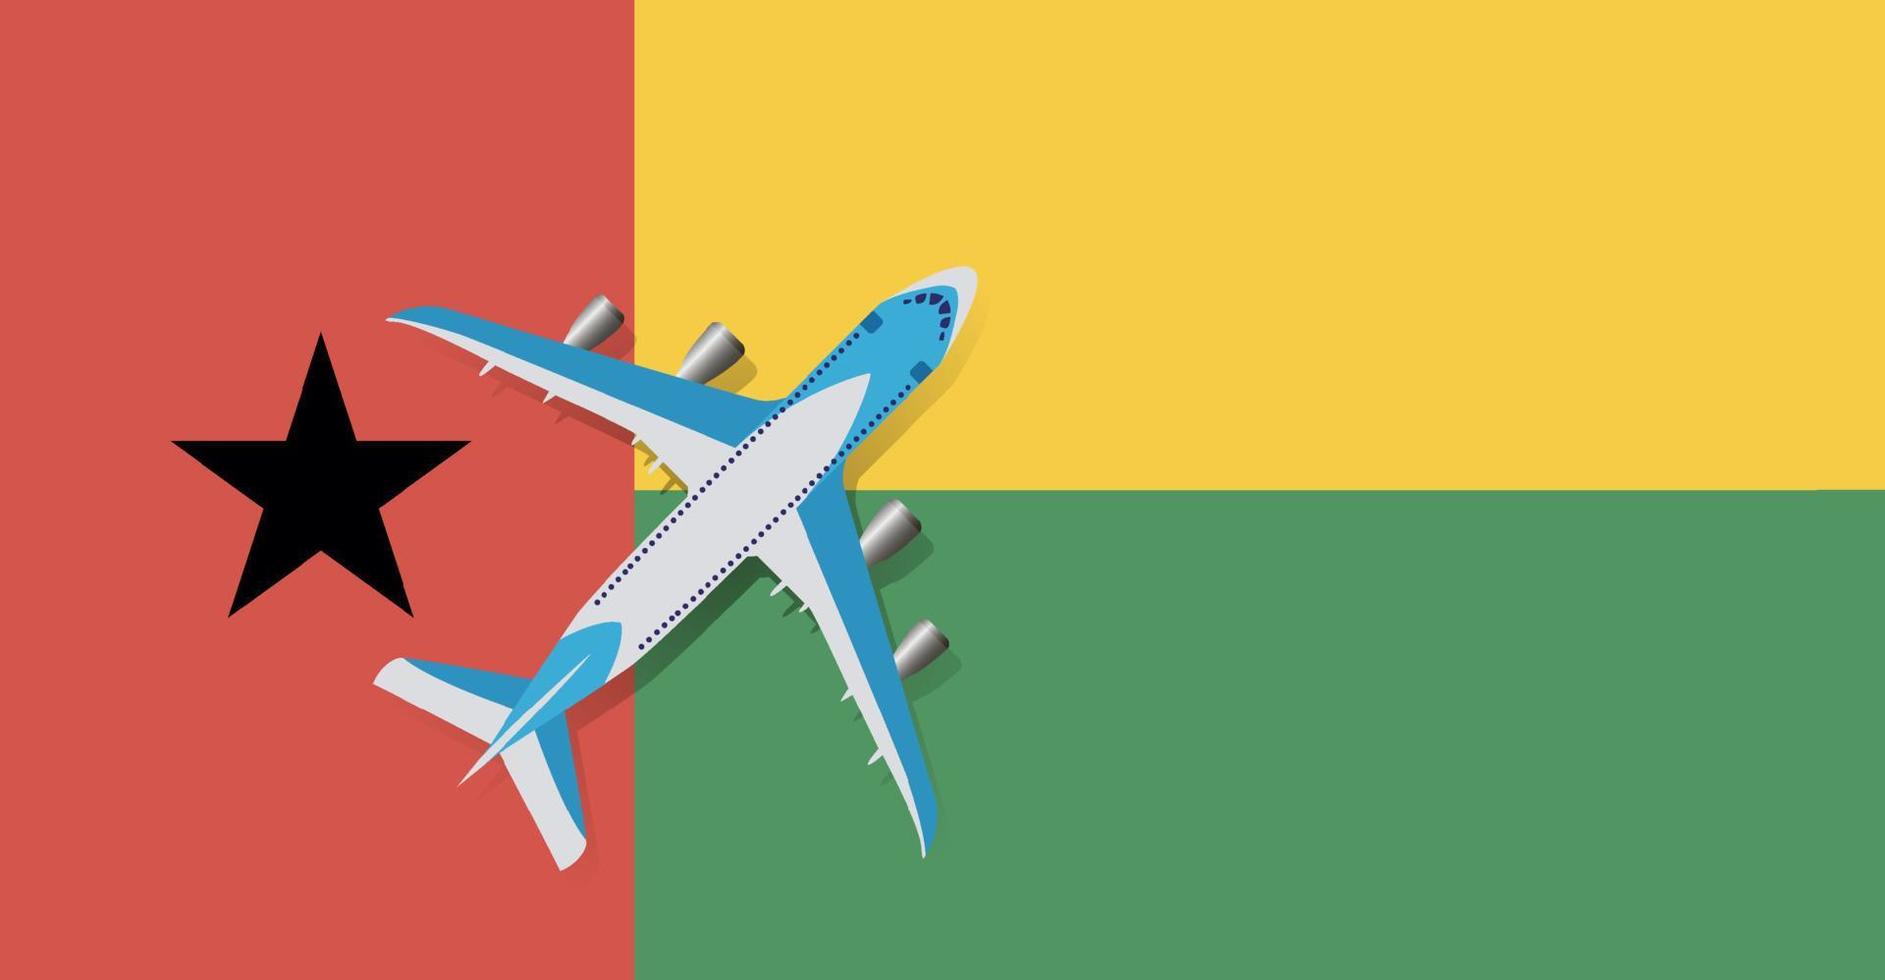 illustrazione vettoriale di un aereo passeggeri che sorvola la bandiera della Guinea Bissau. concetto di turismo e viaggi